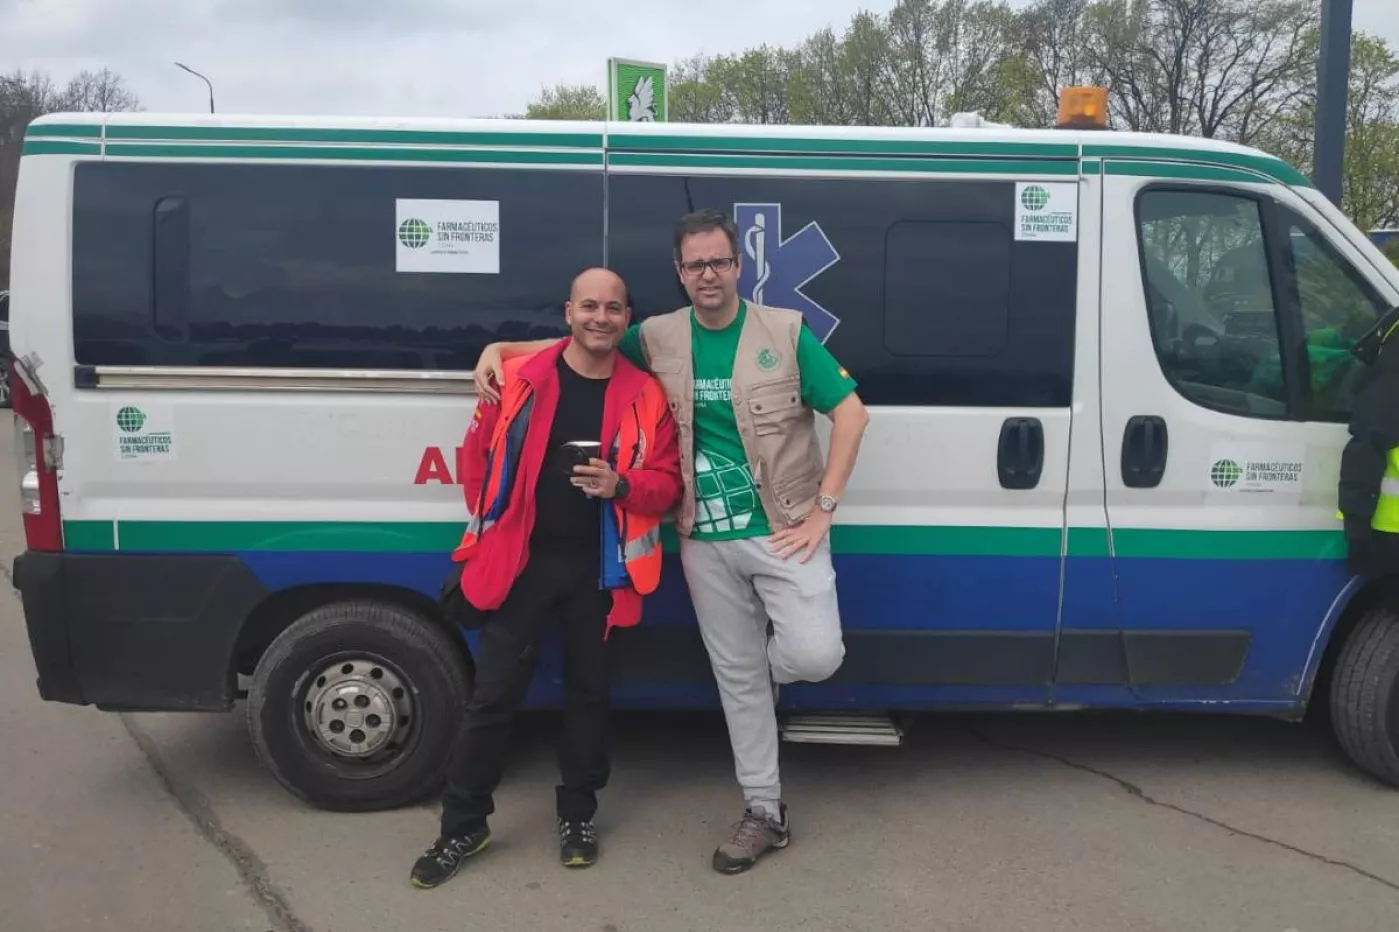  Roberto Rubio Director de SAR Navarra y coordinador de la misión, y Ángel A. Huélamo, director general de FSF, en Leopolis (Lviv), Ucrania, posan junto a la ambulancia que entregarán en Ucrania.